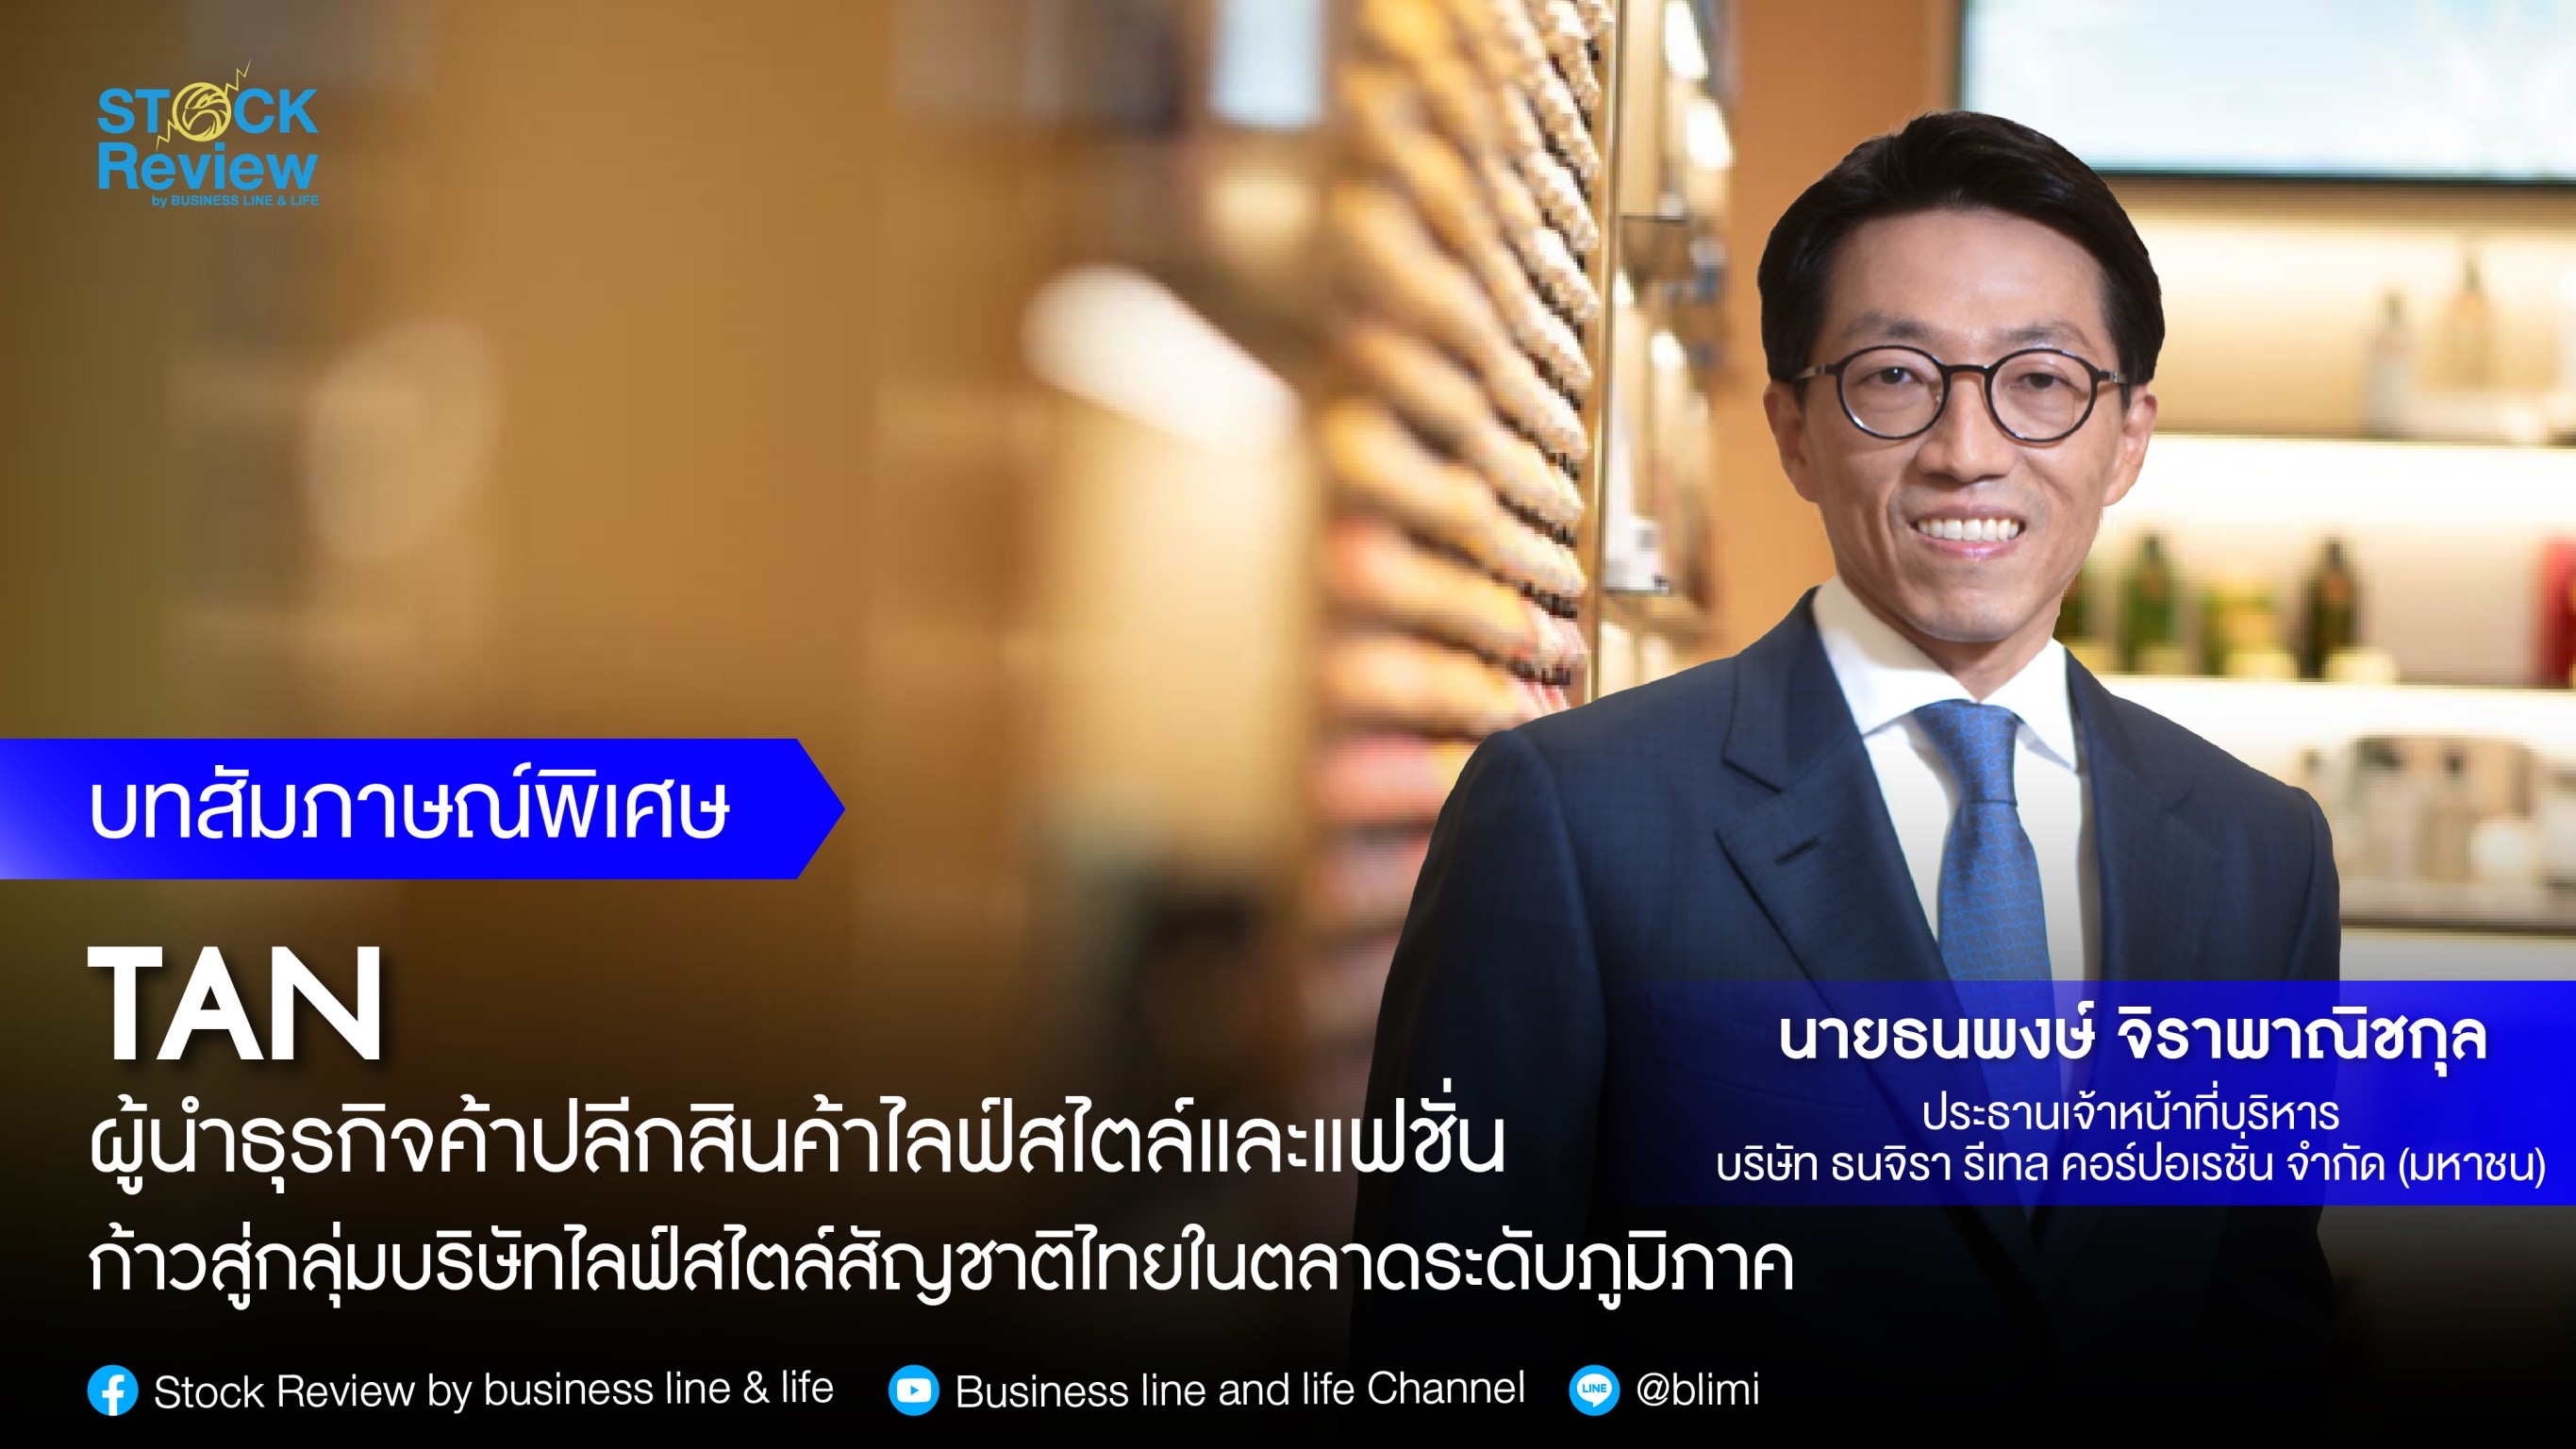 TAN  ผู้นำธุรกิจค้าปลีกสินค้าไลฟ์สไตล์และแฟชั่นก้าวสู่กลุ่มบริษัทไลฟ์สไตล์สัญชาติไทยในตลาดระดับภูมิภาค